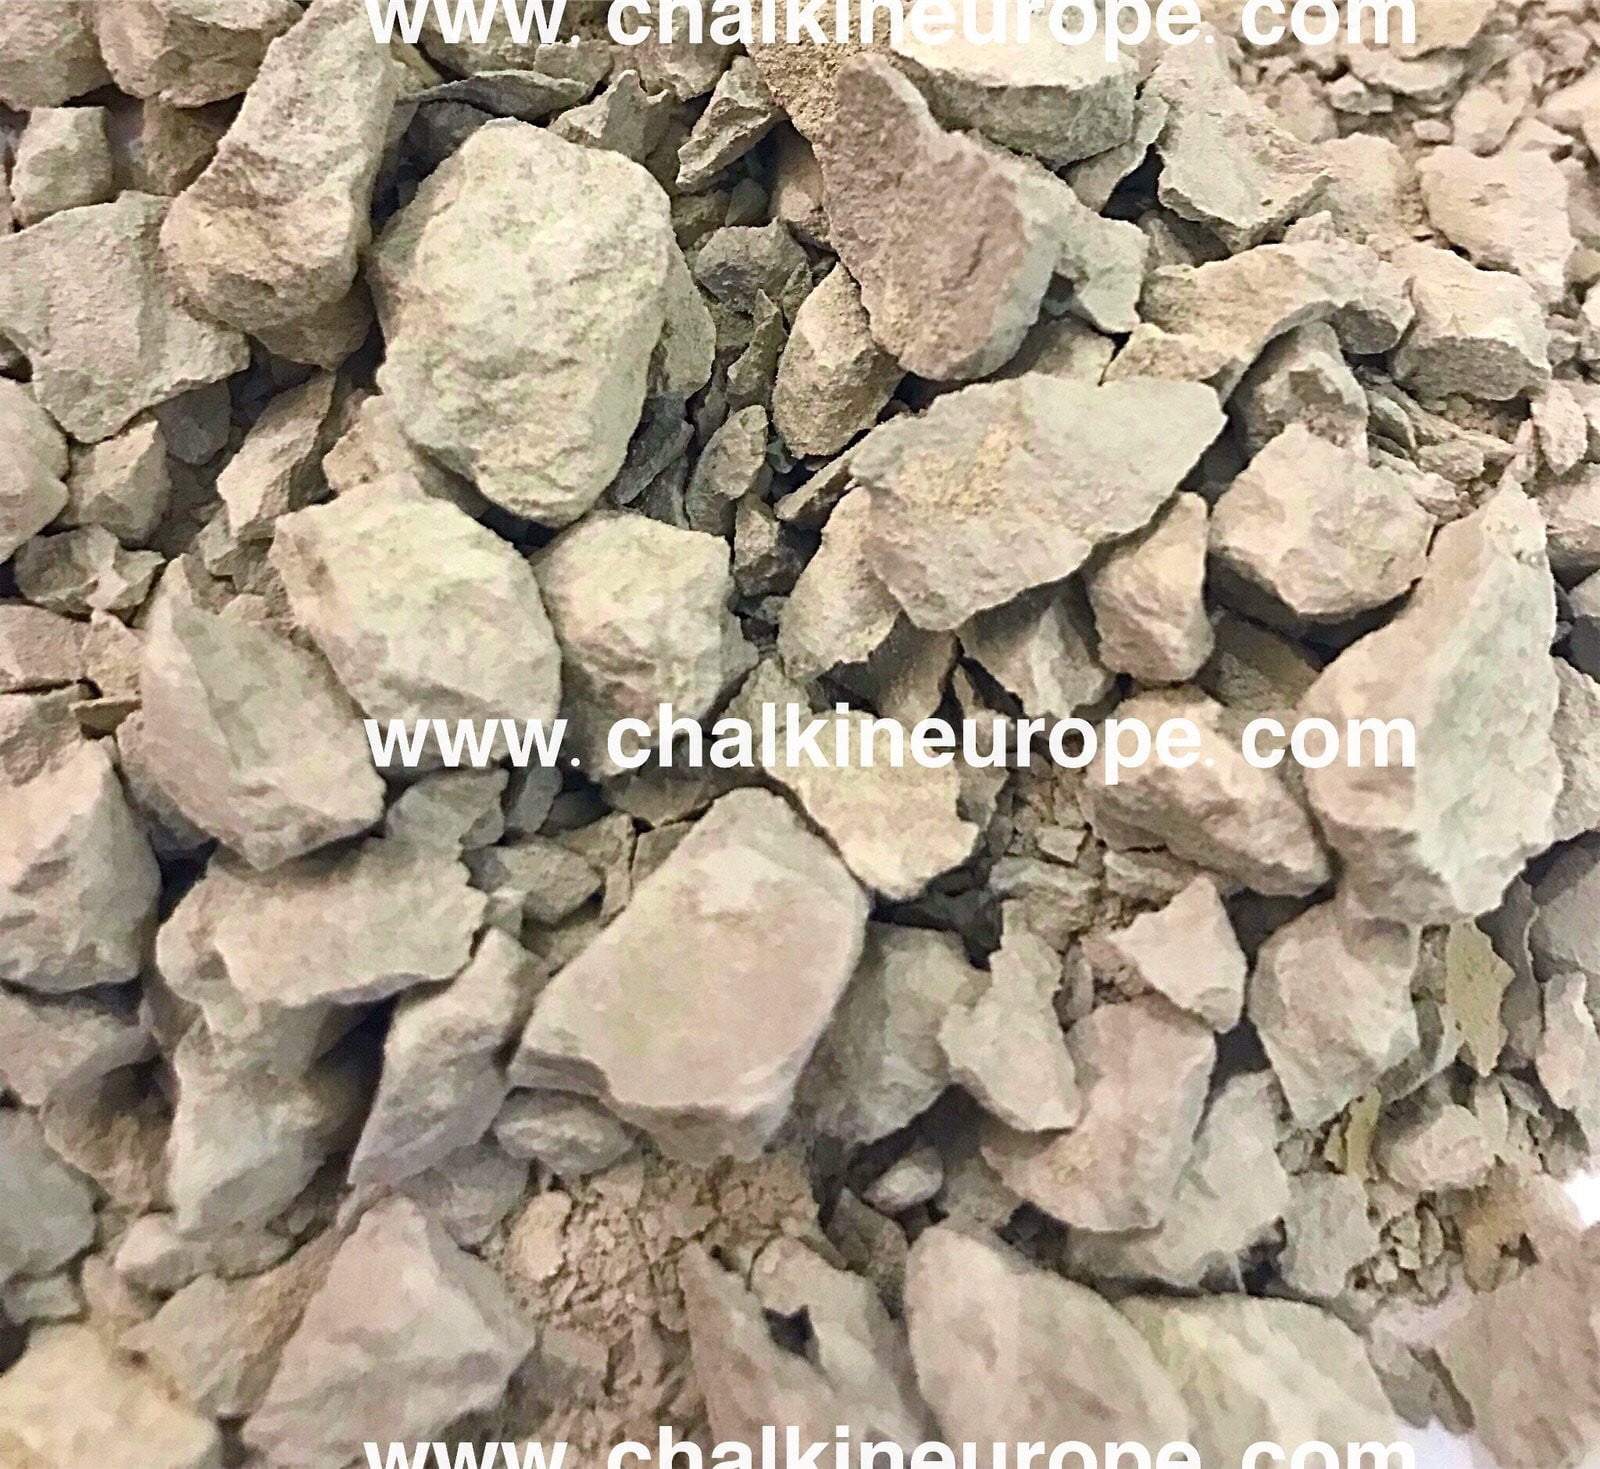 Сребърни прашни глинени хапки - Chalkineurope